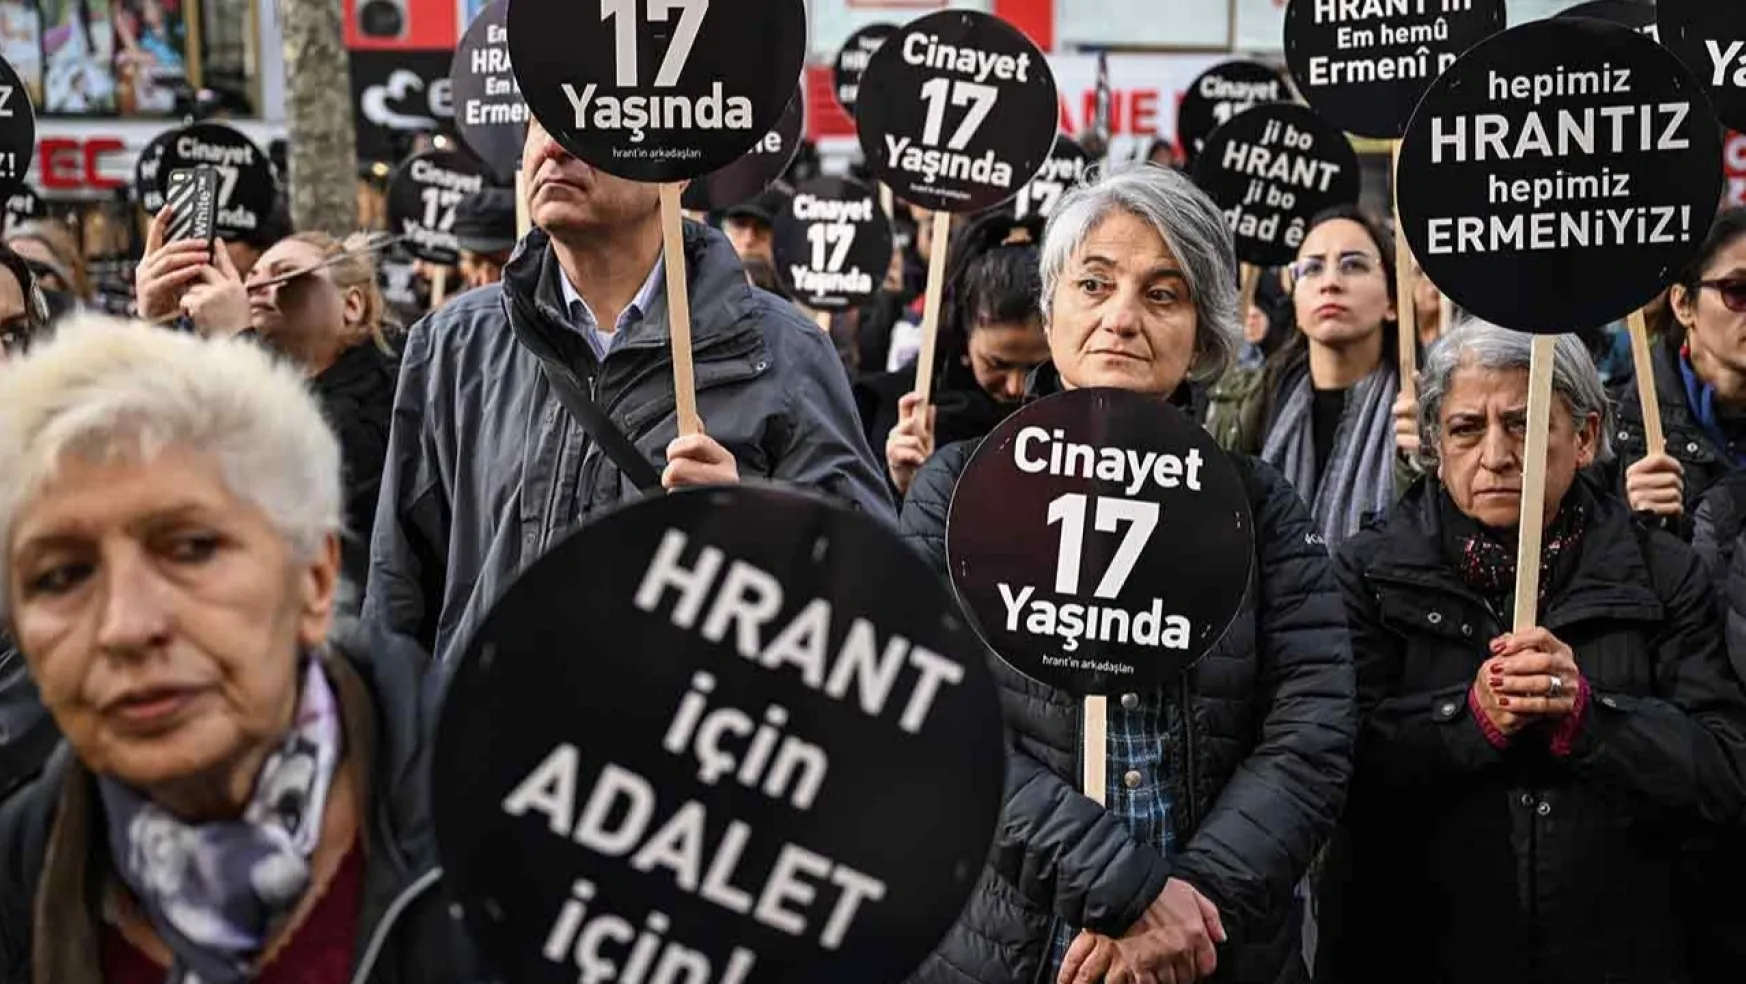 Hrant Dink'in Katledilişinin 17. Yılında Anma Gerçekleştirildi!